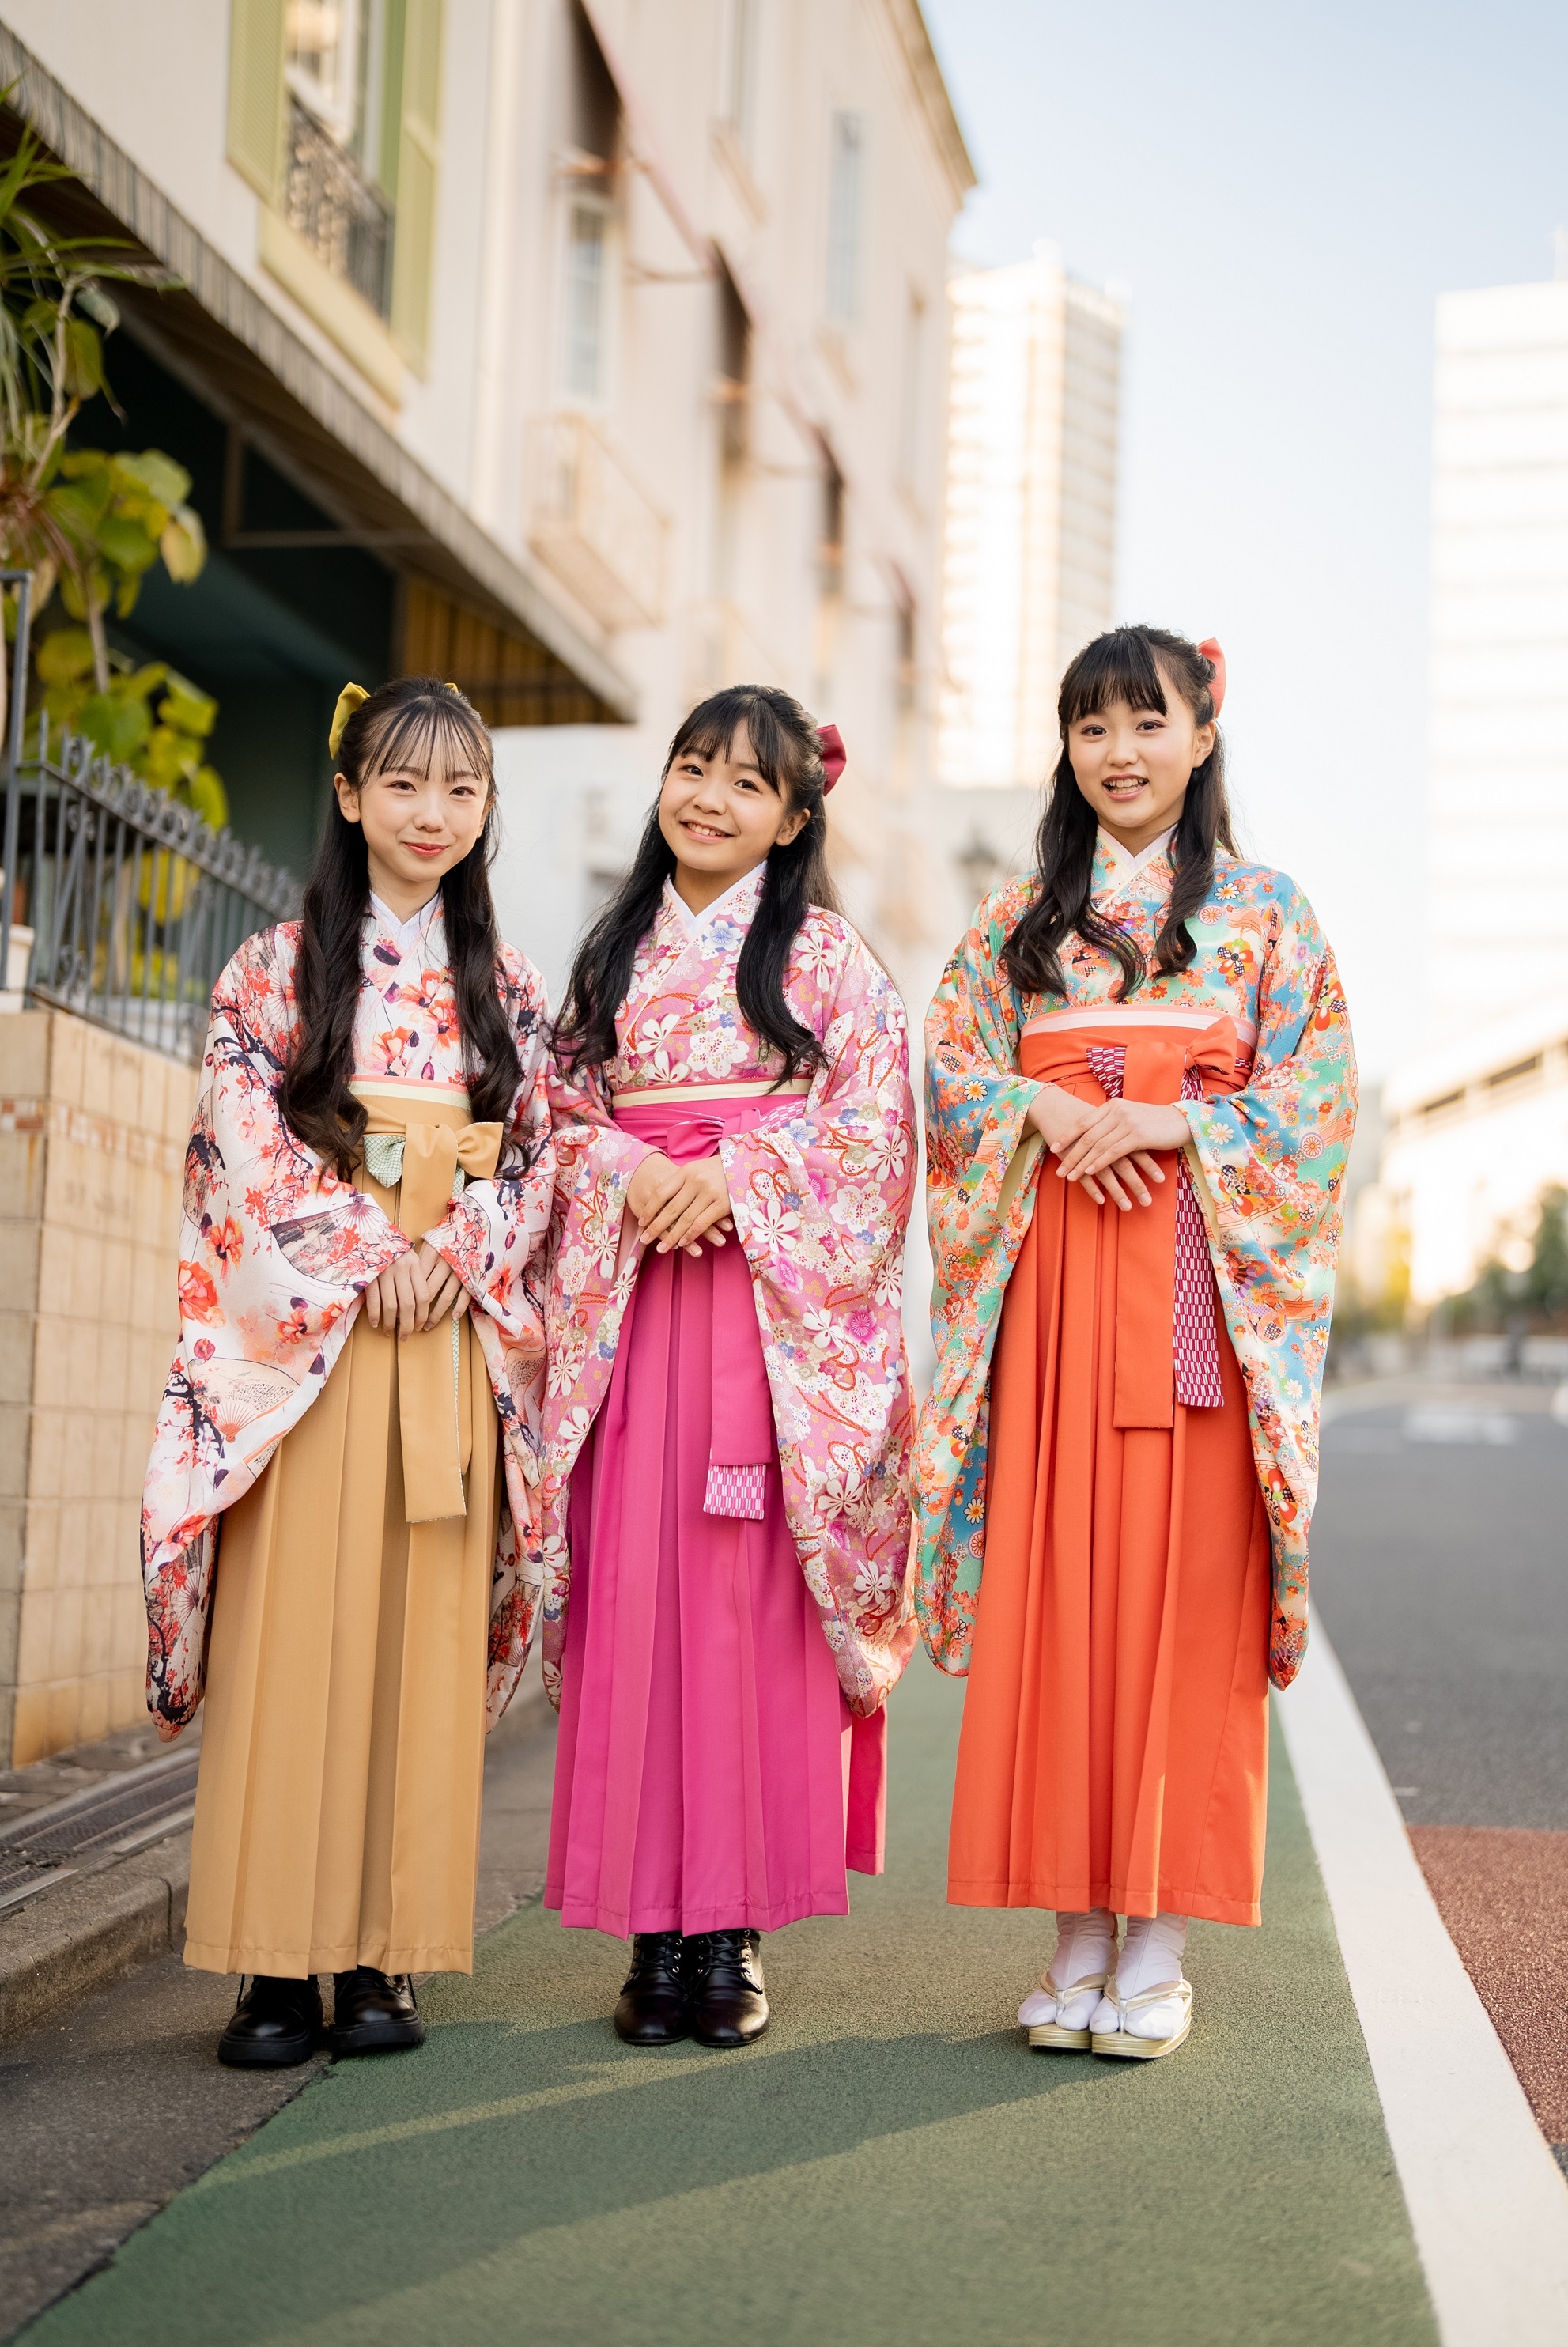 スウィートマミー「本格卒業式袴」に新色追加 小学校の卒業式袴